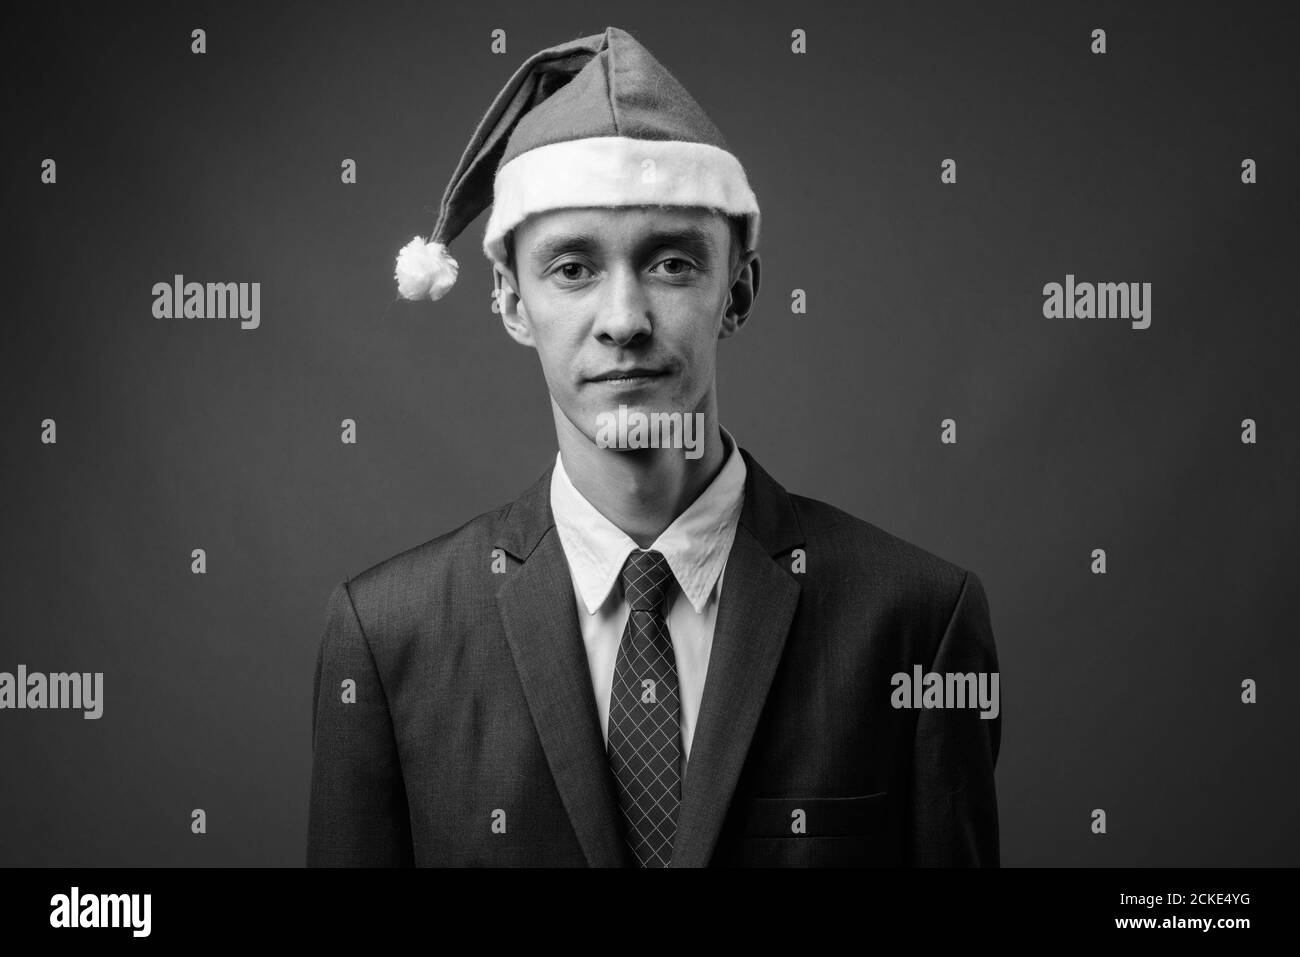 Portrait de jeune homme d'affaires avec chapeau de père Noël prêt pour Noël Banque D'Images